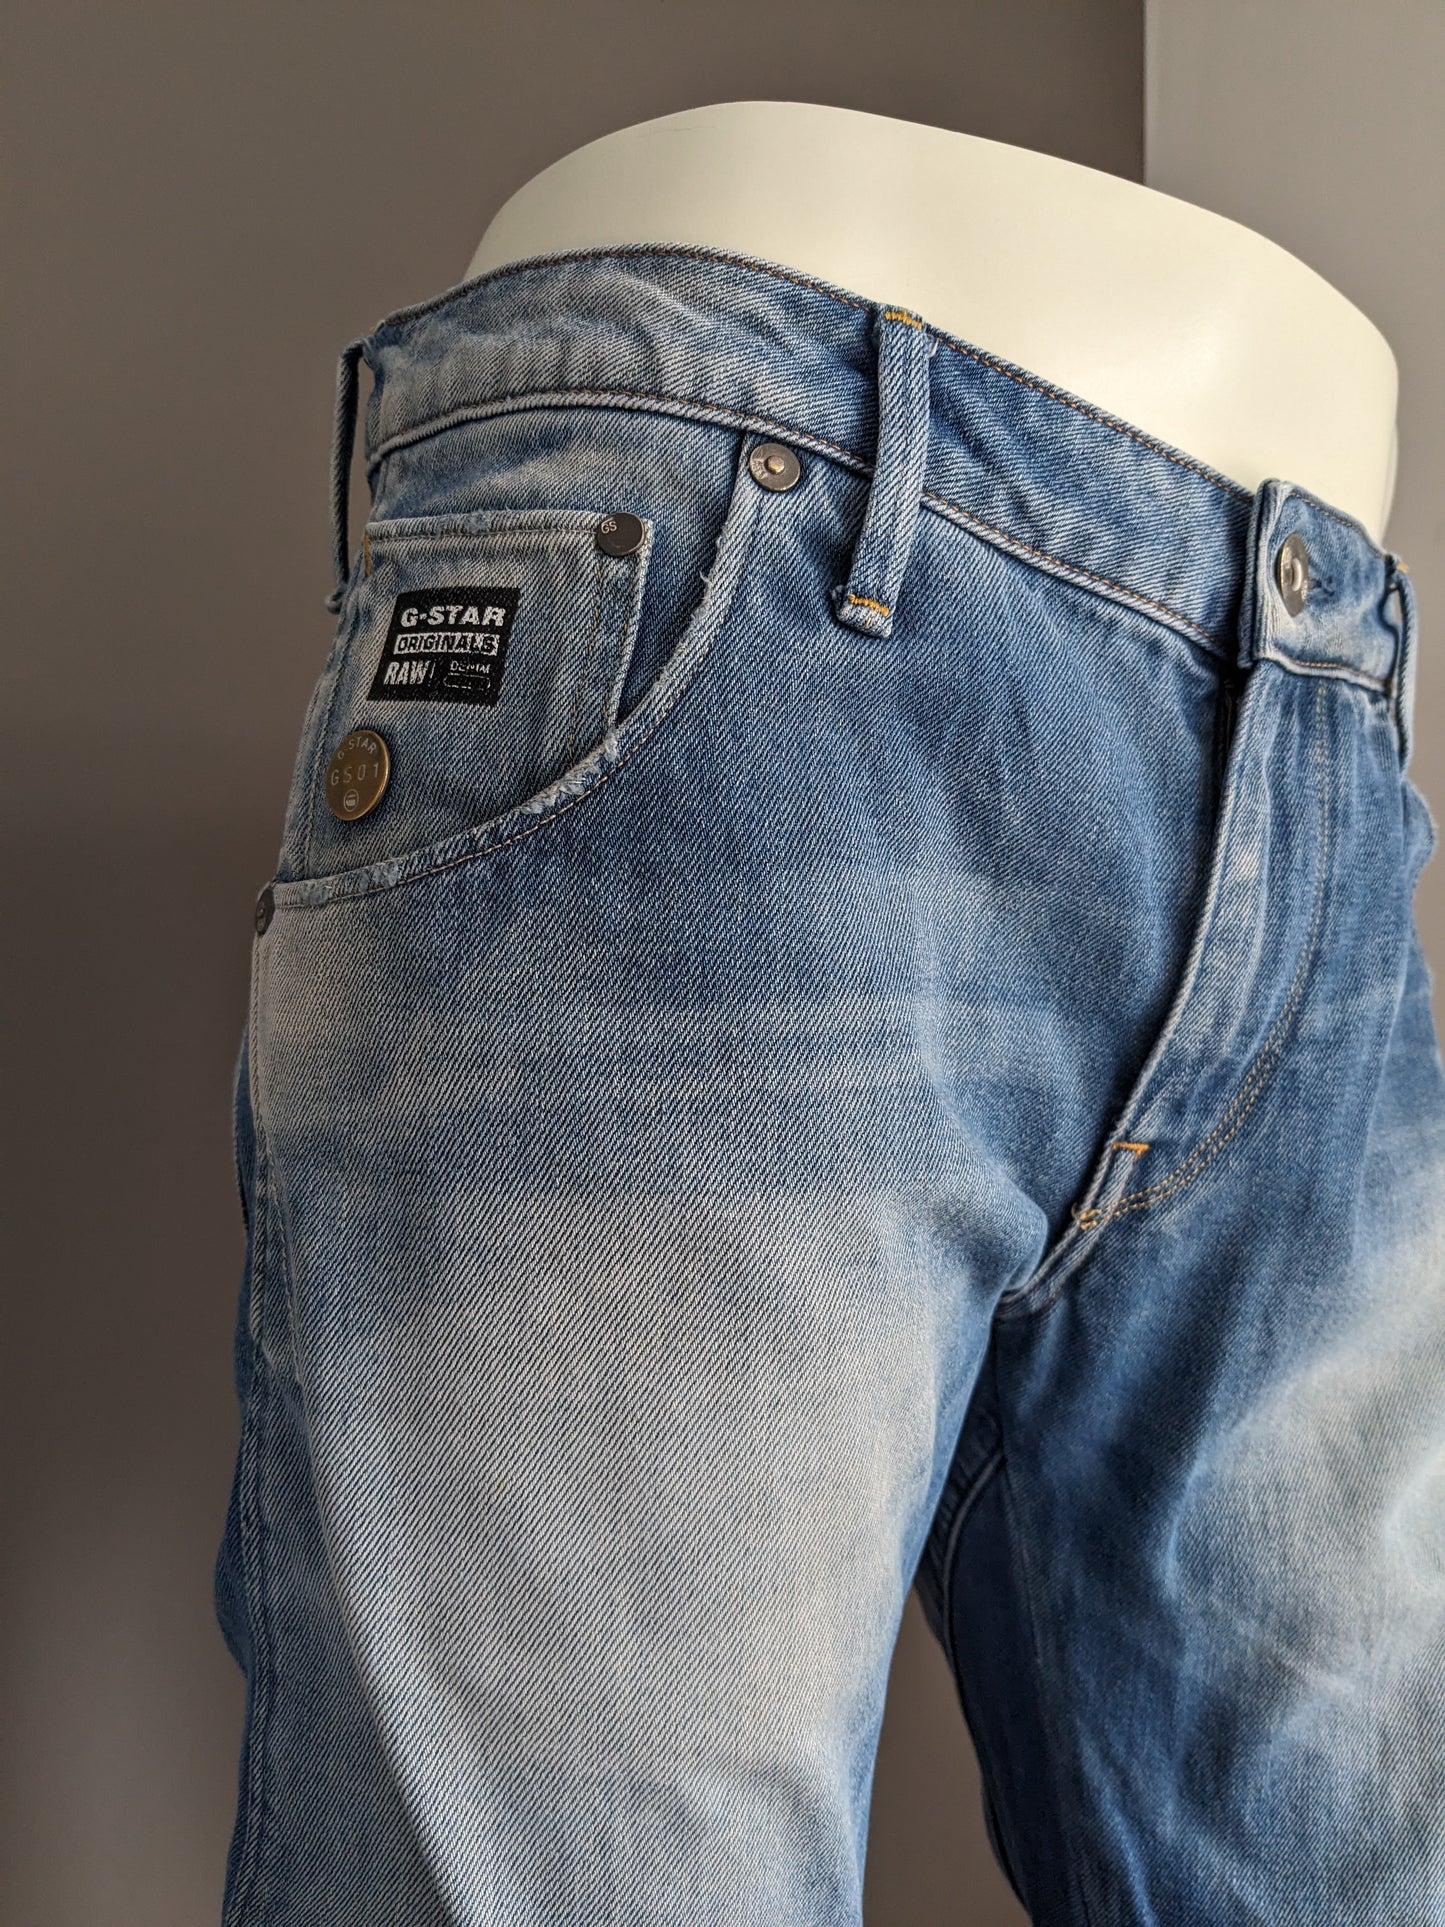 Gstar Jeans crudos. Color azul claro. Tamaño W33 - L32.